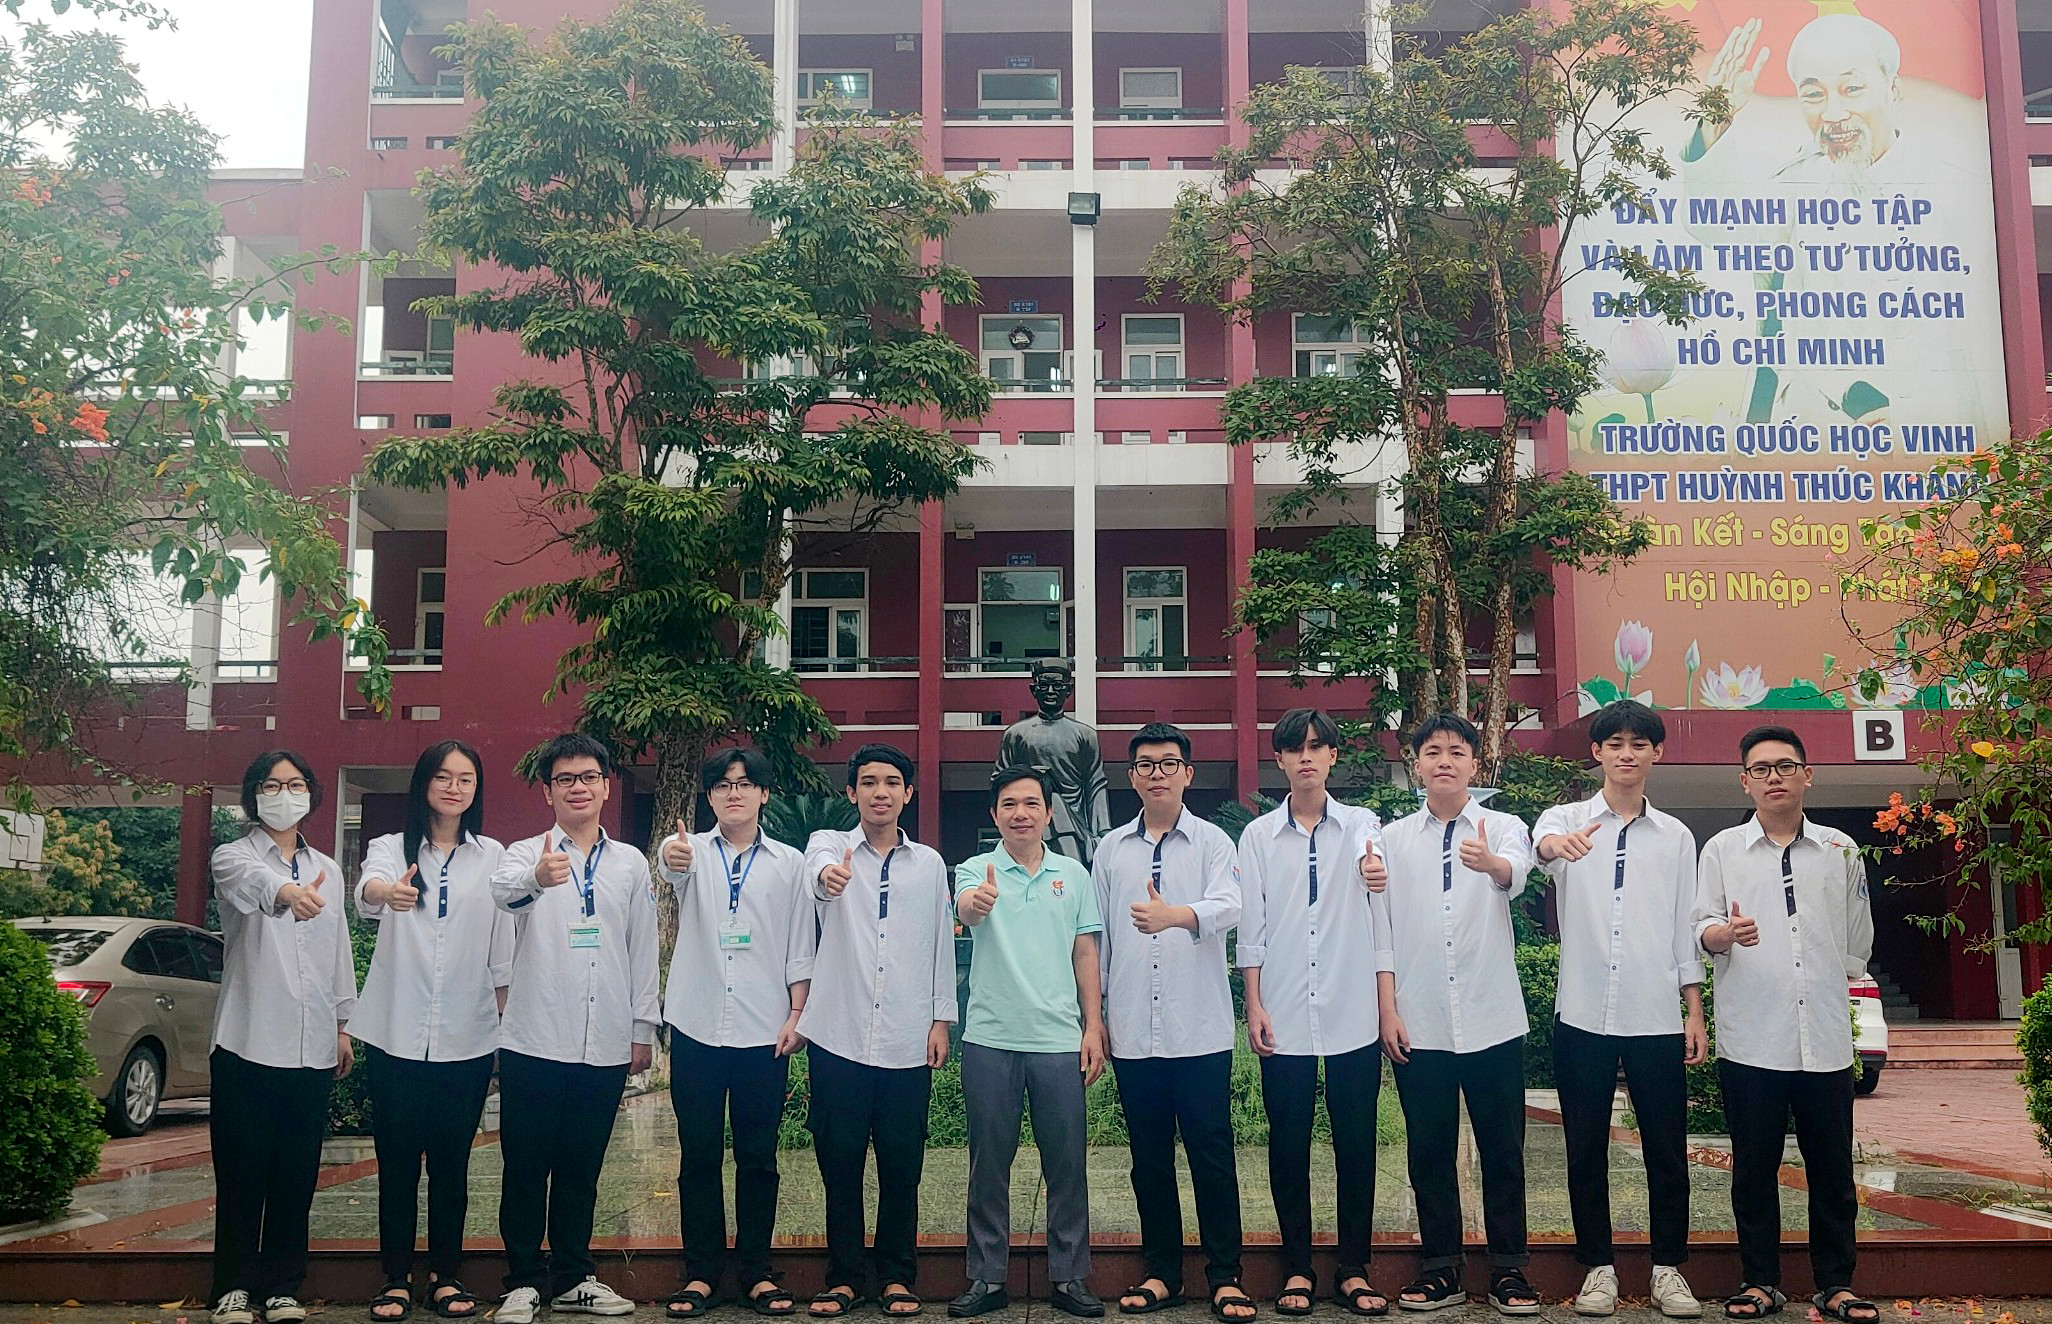 bna_Đội tuyển học sinh giỏi môn Vật lý của Trường THPT Huỳnh Thúc Kháng với 2 giải Nhất và 6 giải Nhì. Ảnh - PV.jpg